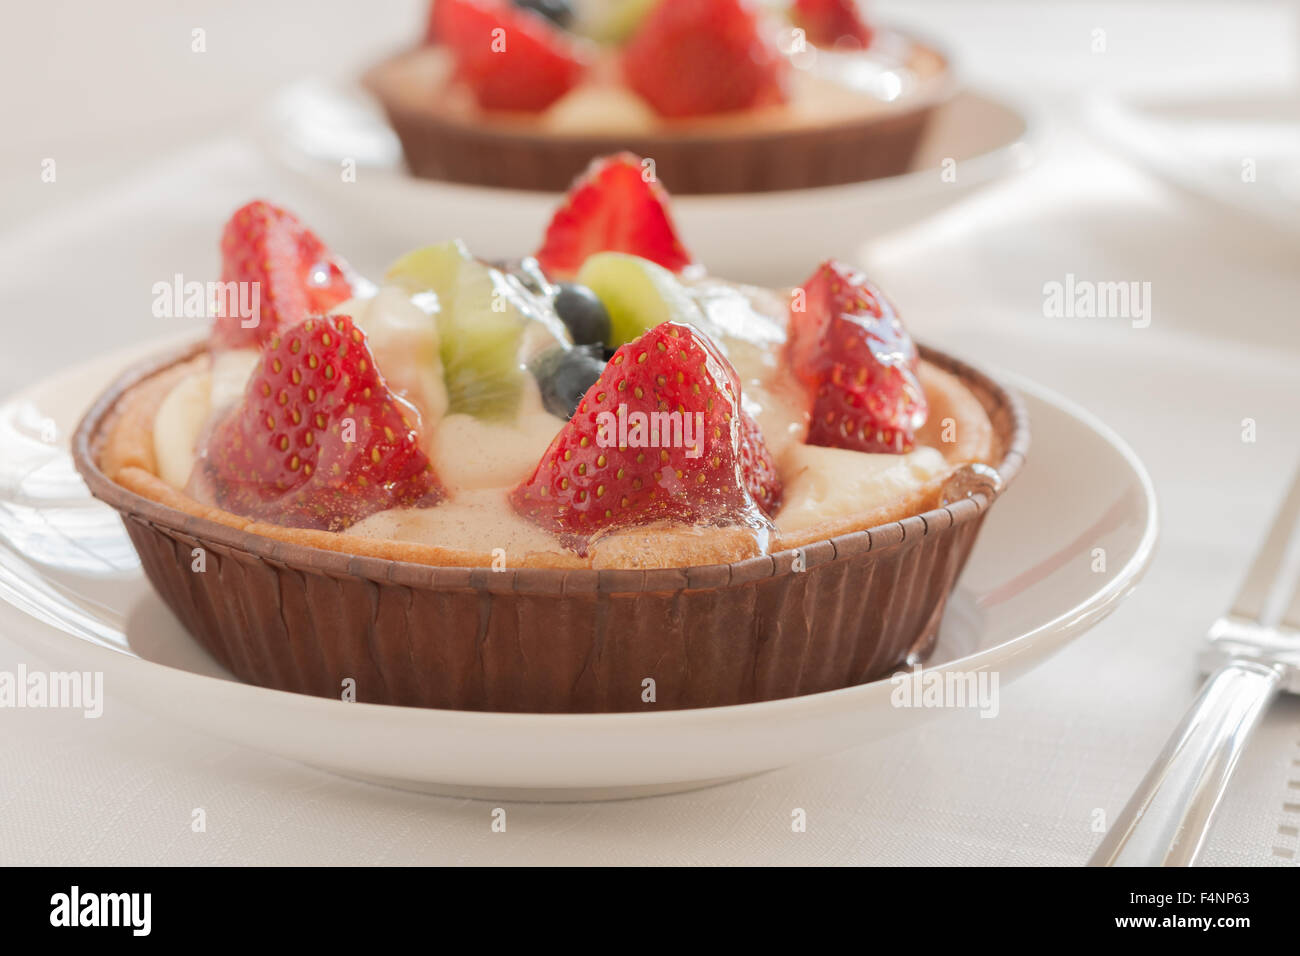 Obstkuchen, gefüllt mit Creme Patissiere Erdbeeren Kiwis und Heidelbeeren gemacht Stockfoto